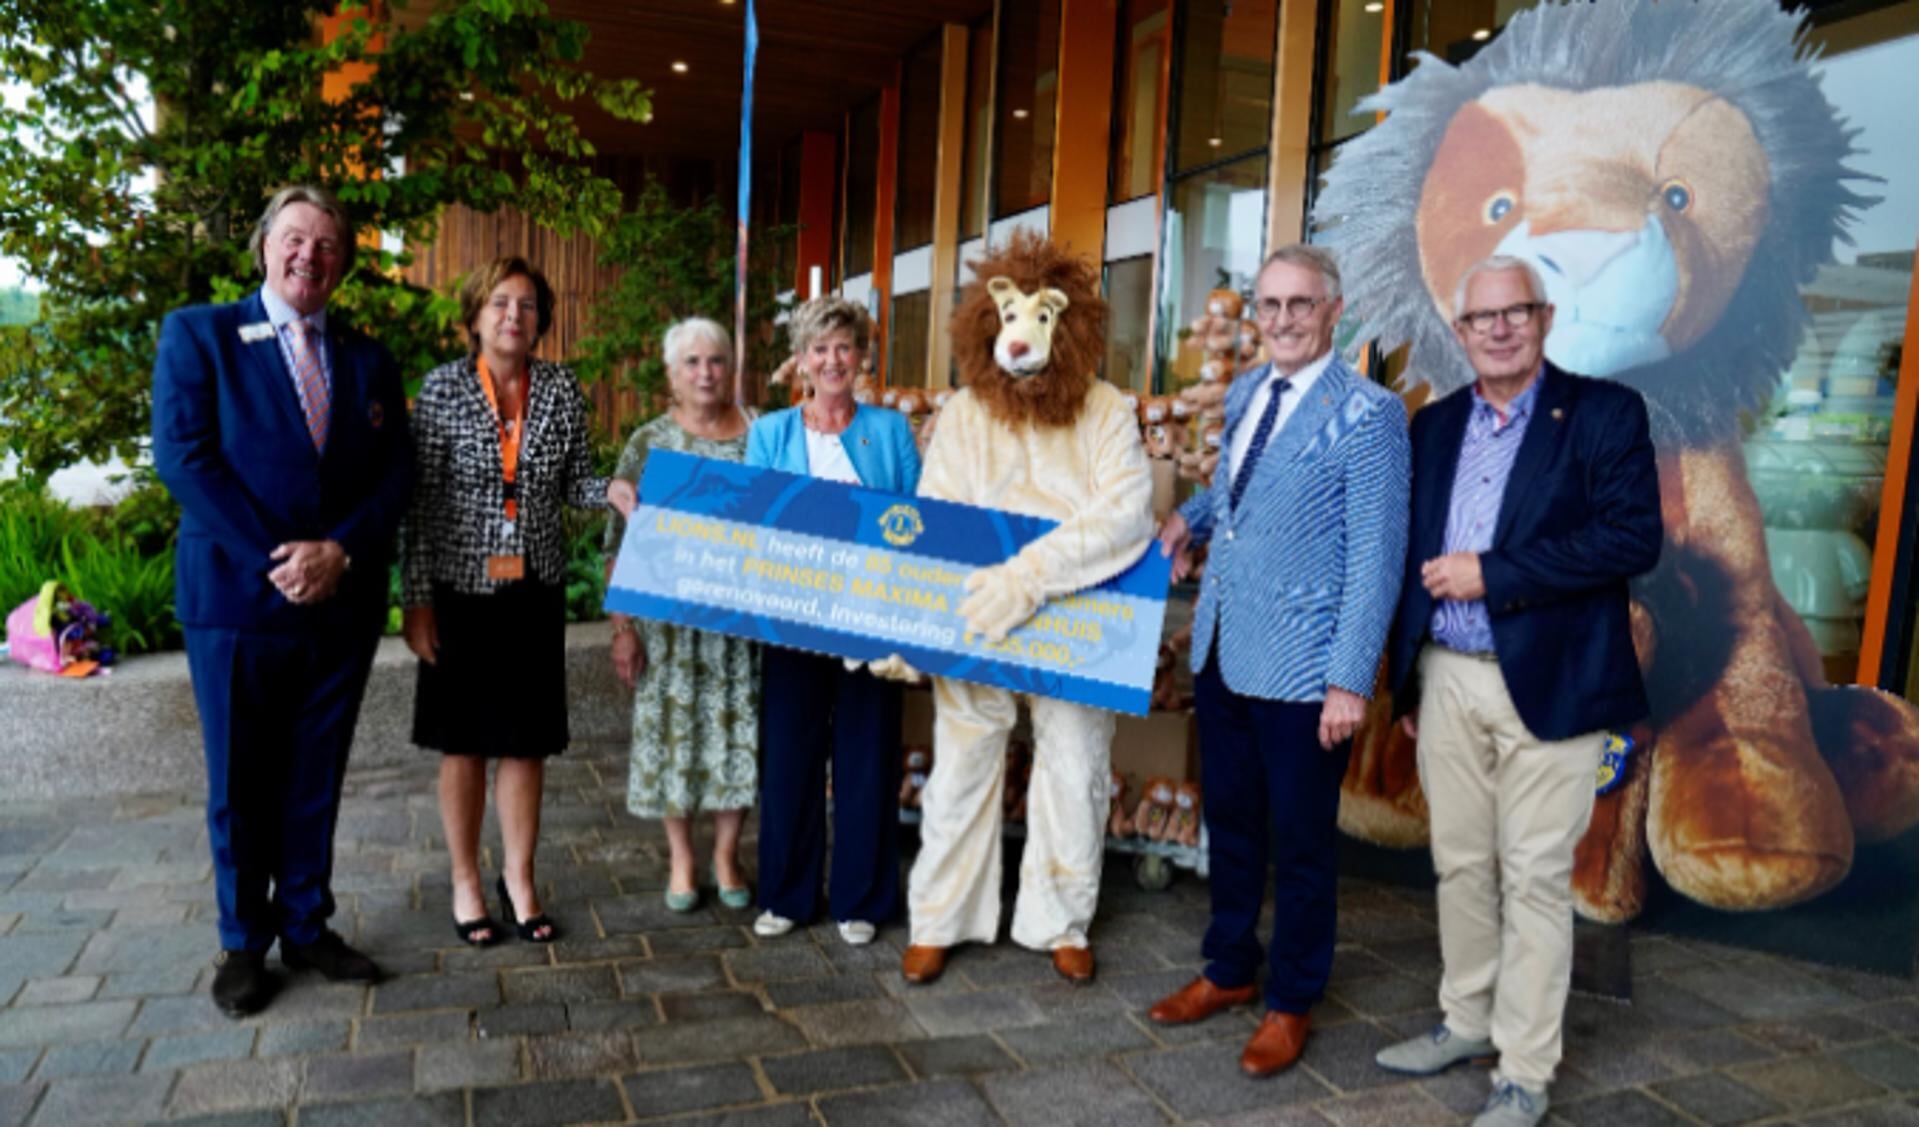 Op de foto van links naar rechts: Bert Verplancke (coördinator Lions clubs International Foundation), Gita Gallé, (lid Raad van Bestuur Prinses Máxima Centrum), Jeannette Peters-La Brijn (Lionsclubs landelijk coördinator activiteiten 2019-2020), Gery